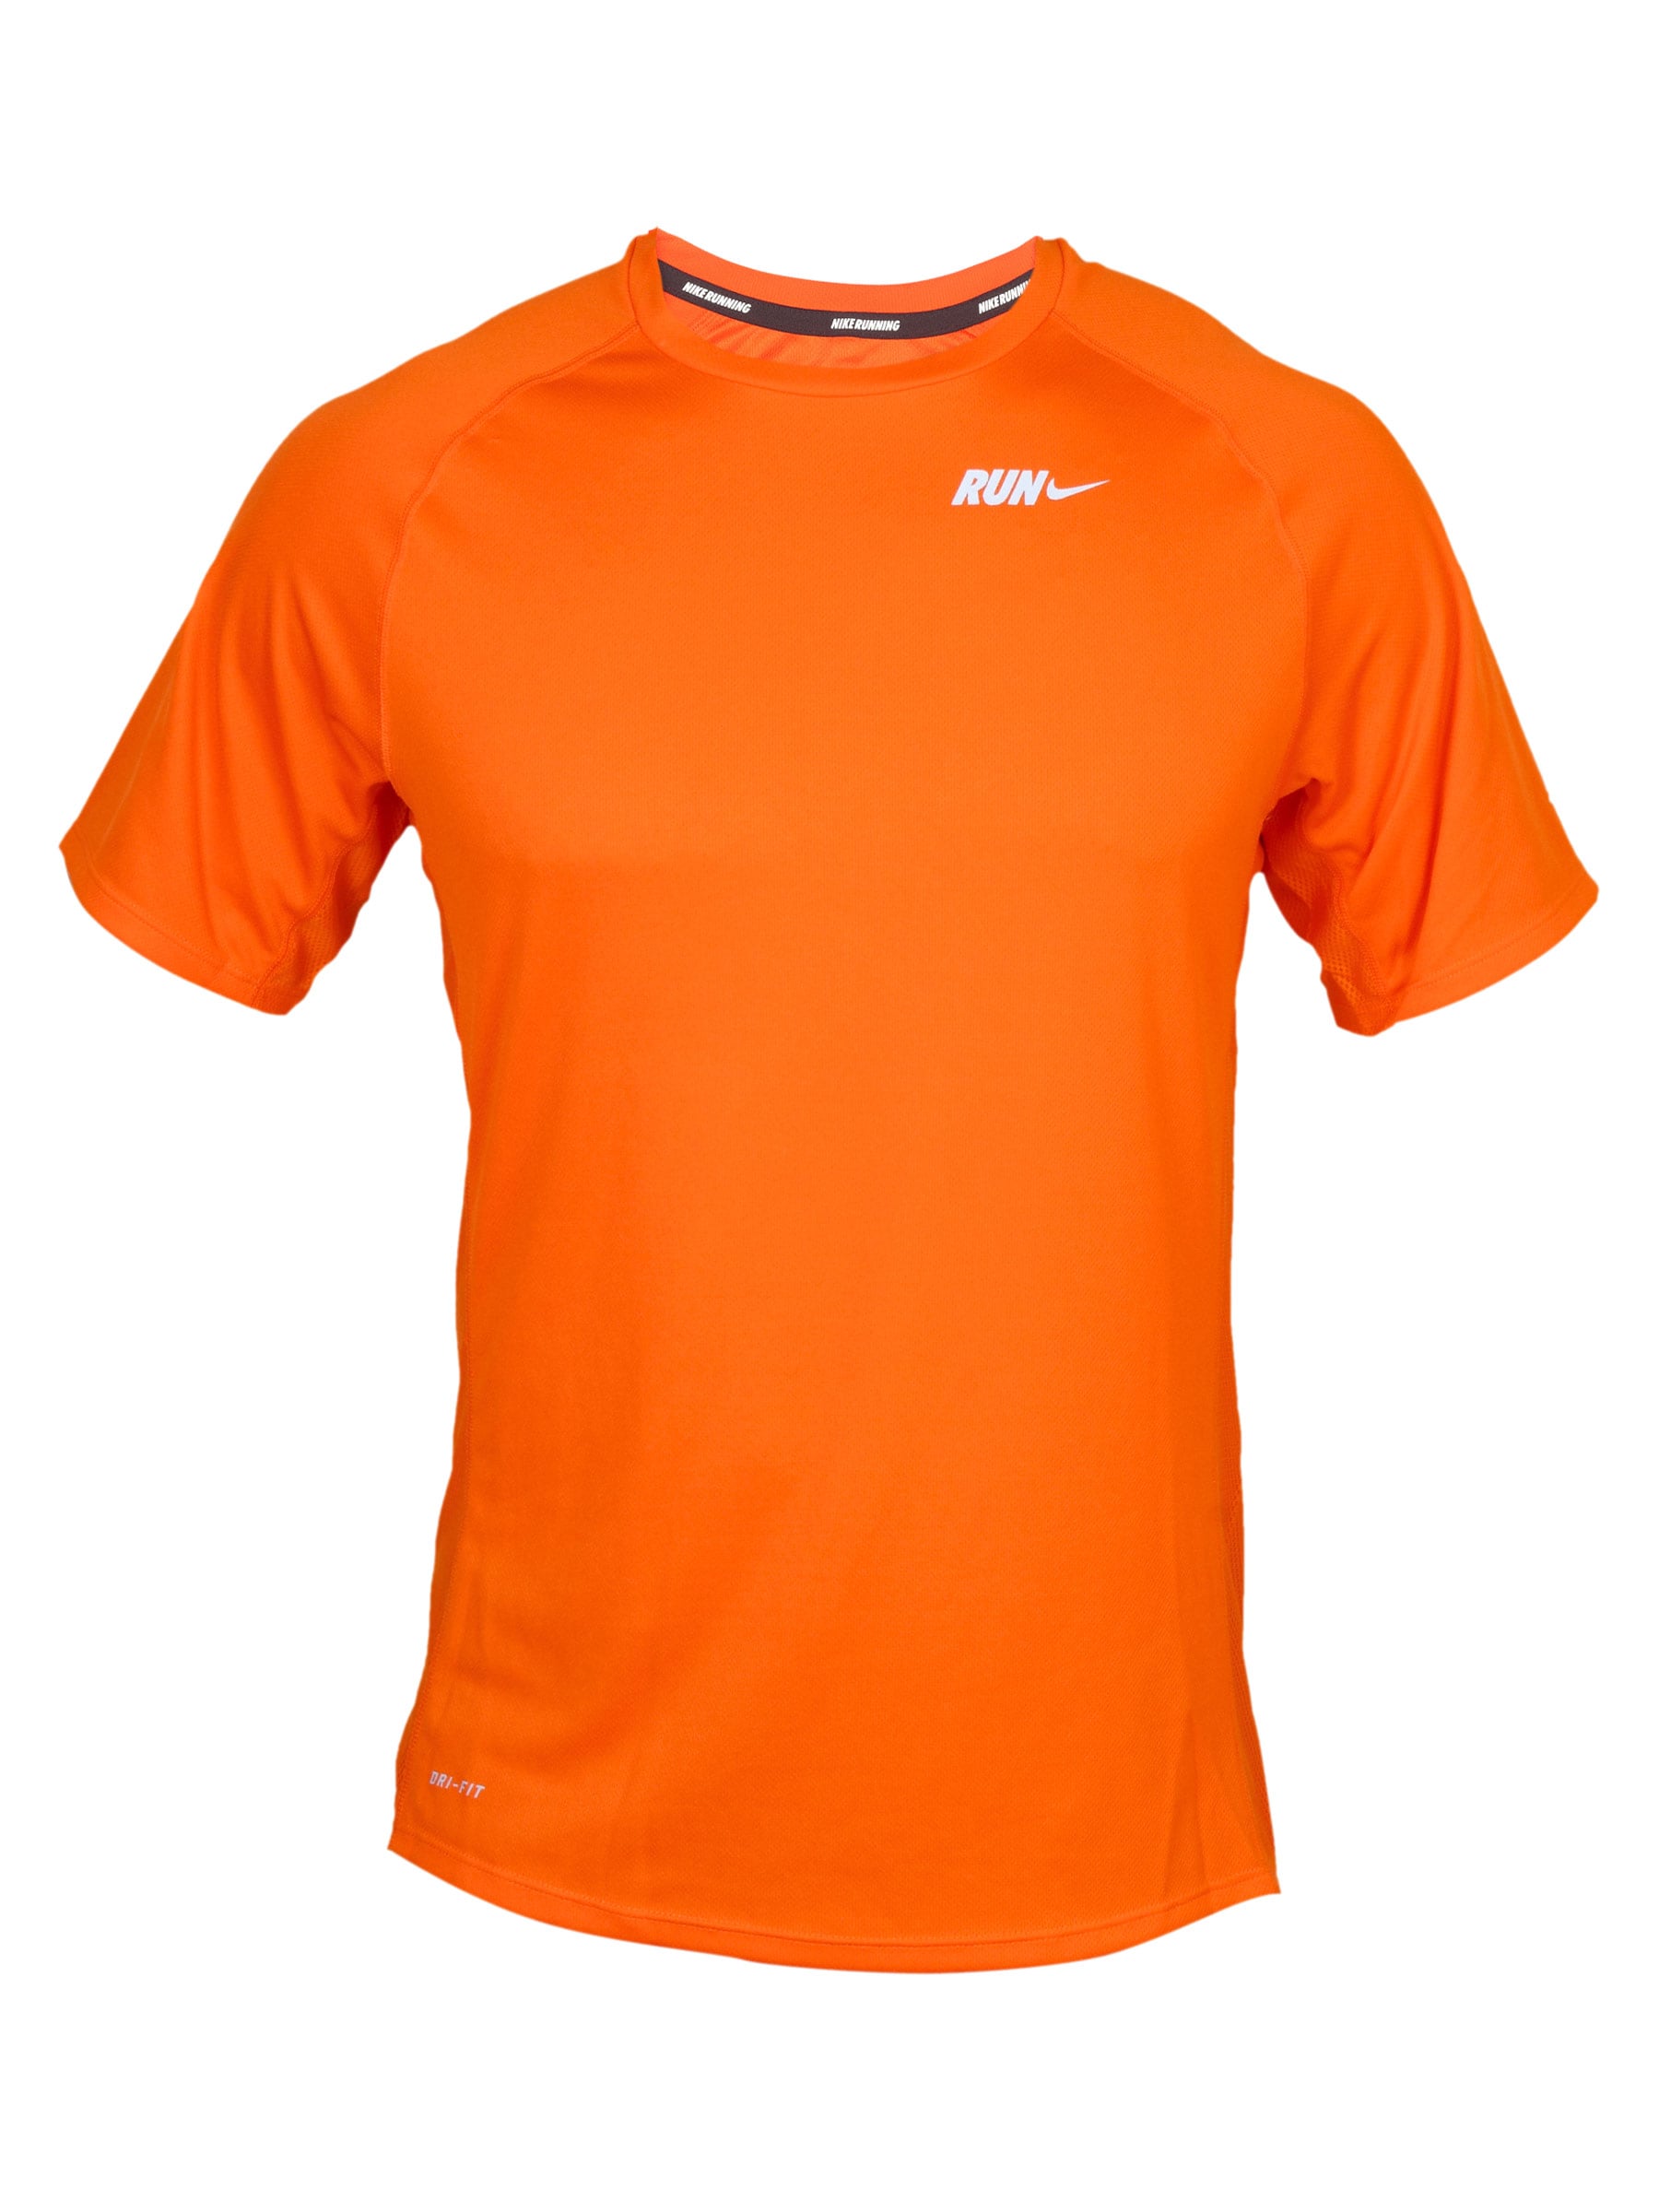 Nike Men's As Sublimated Orange T-shirt